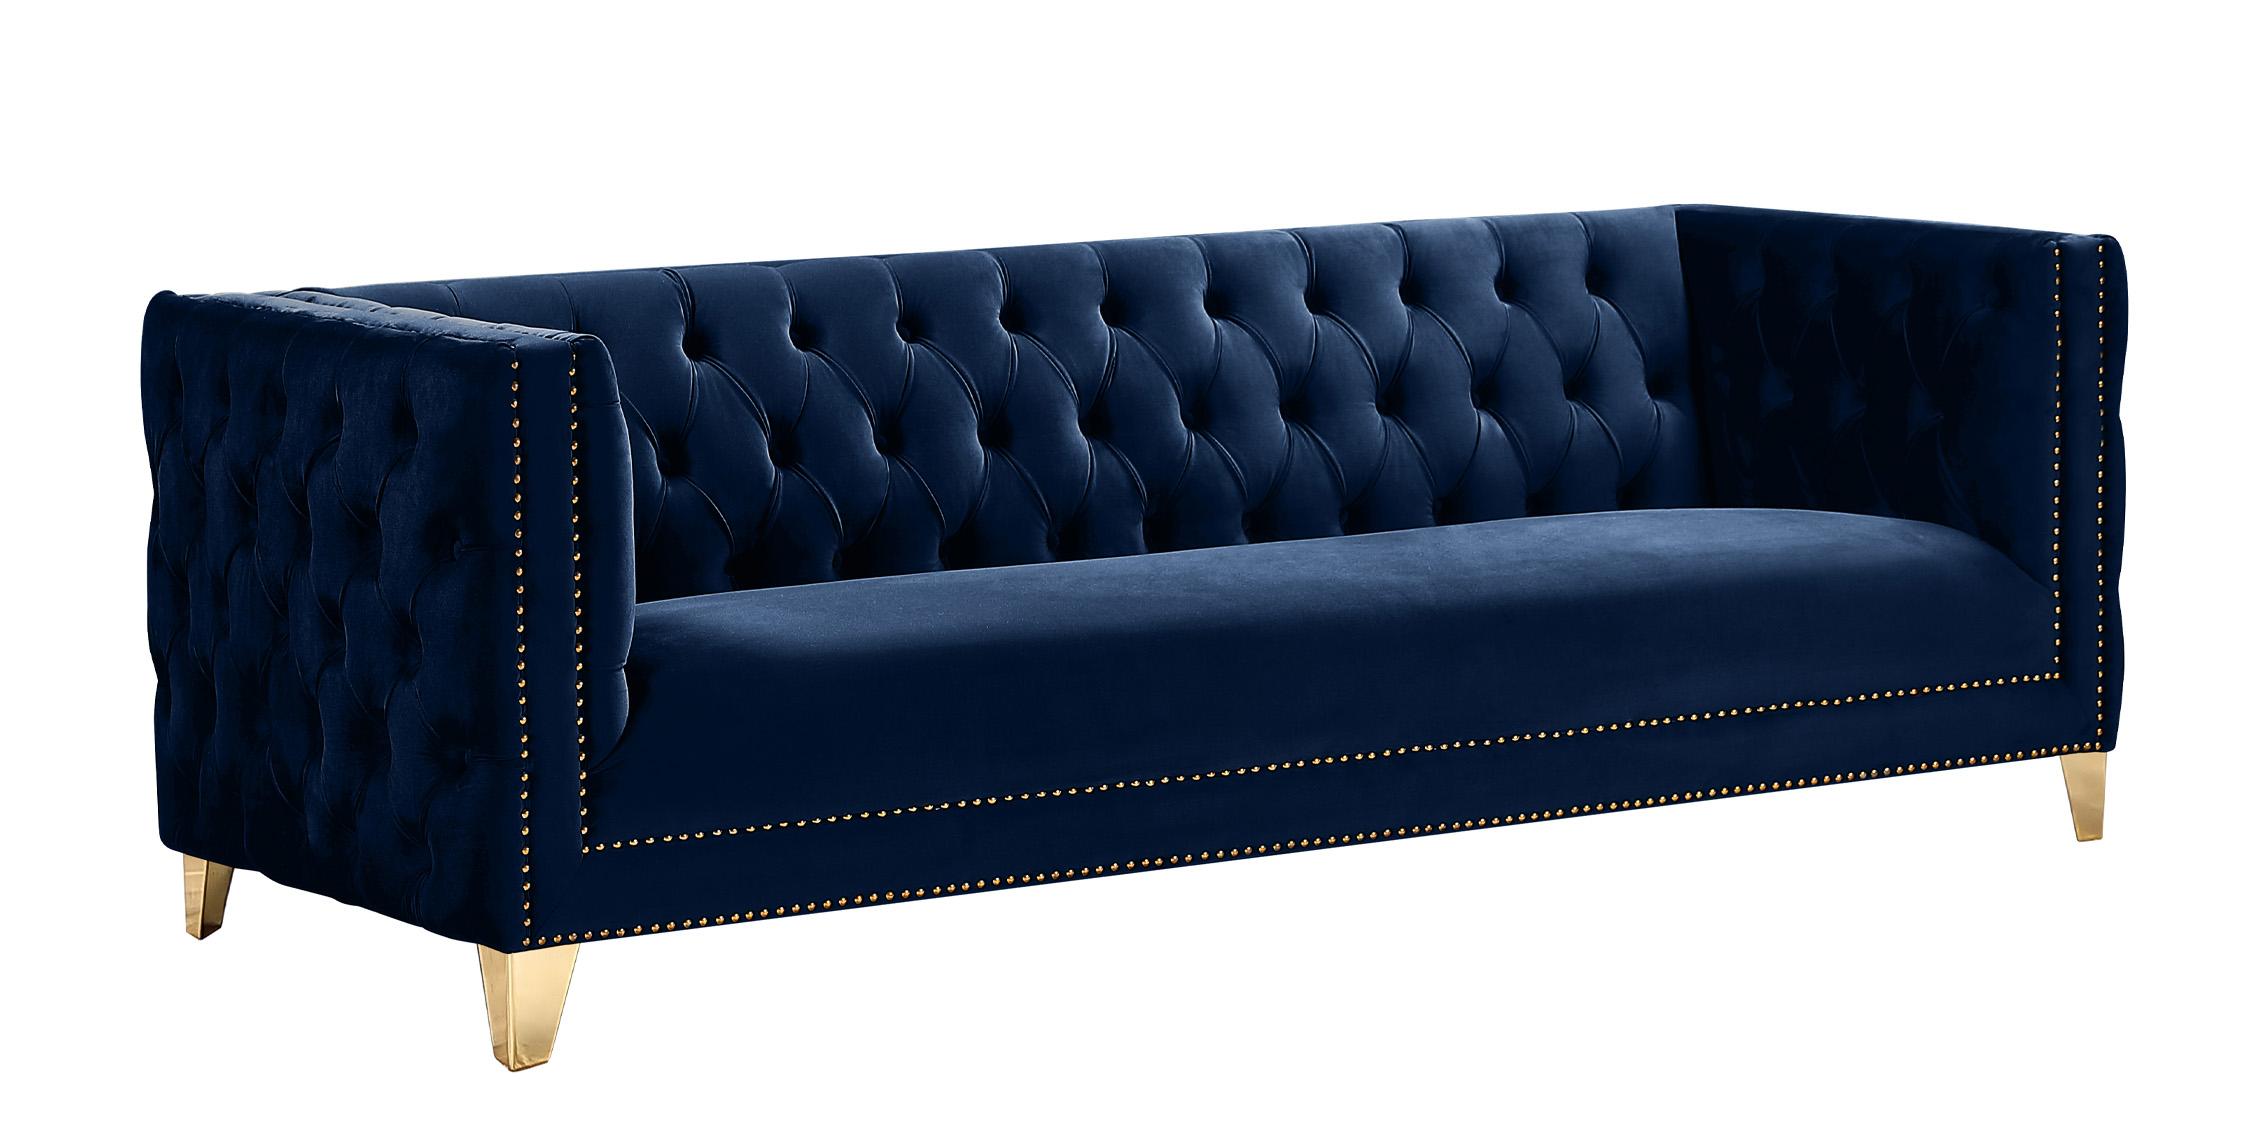 

    
Glam Navy Velvet Tufted Sofa MICHELLE 652Navy-S Meridian Contemporary Modern
